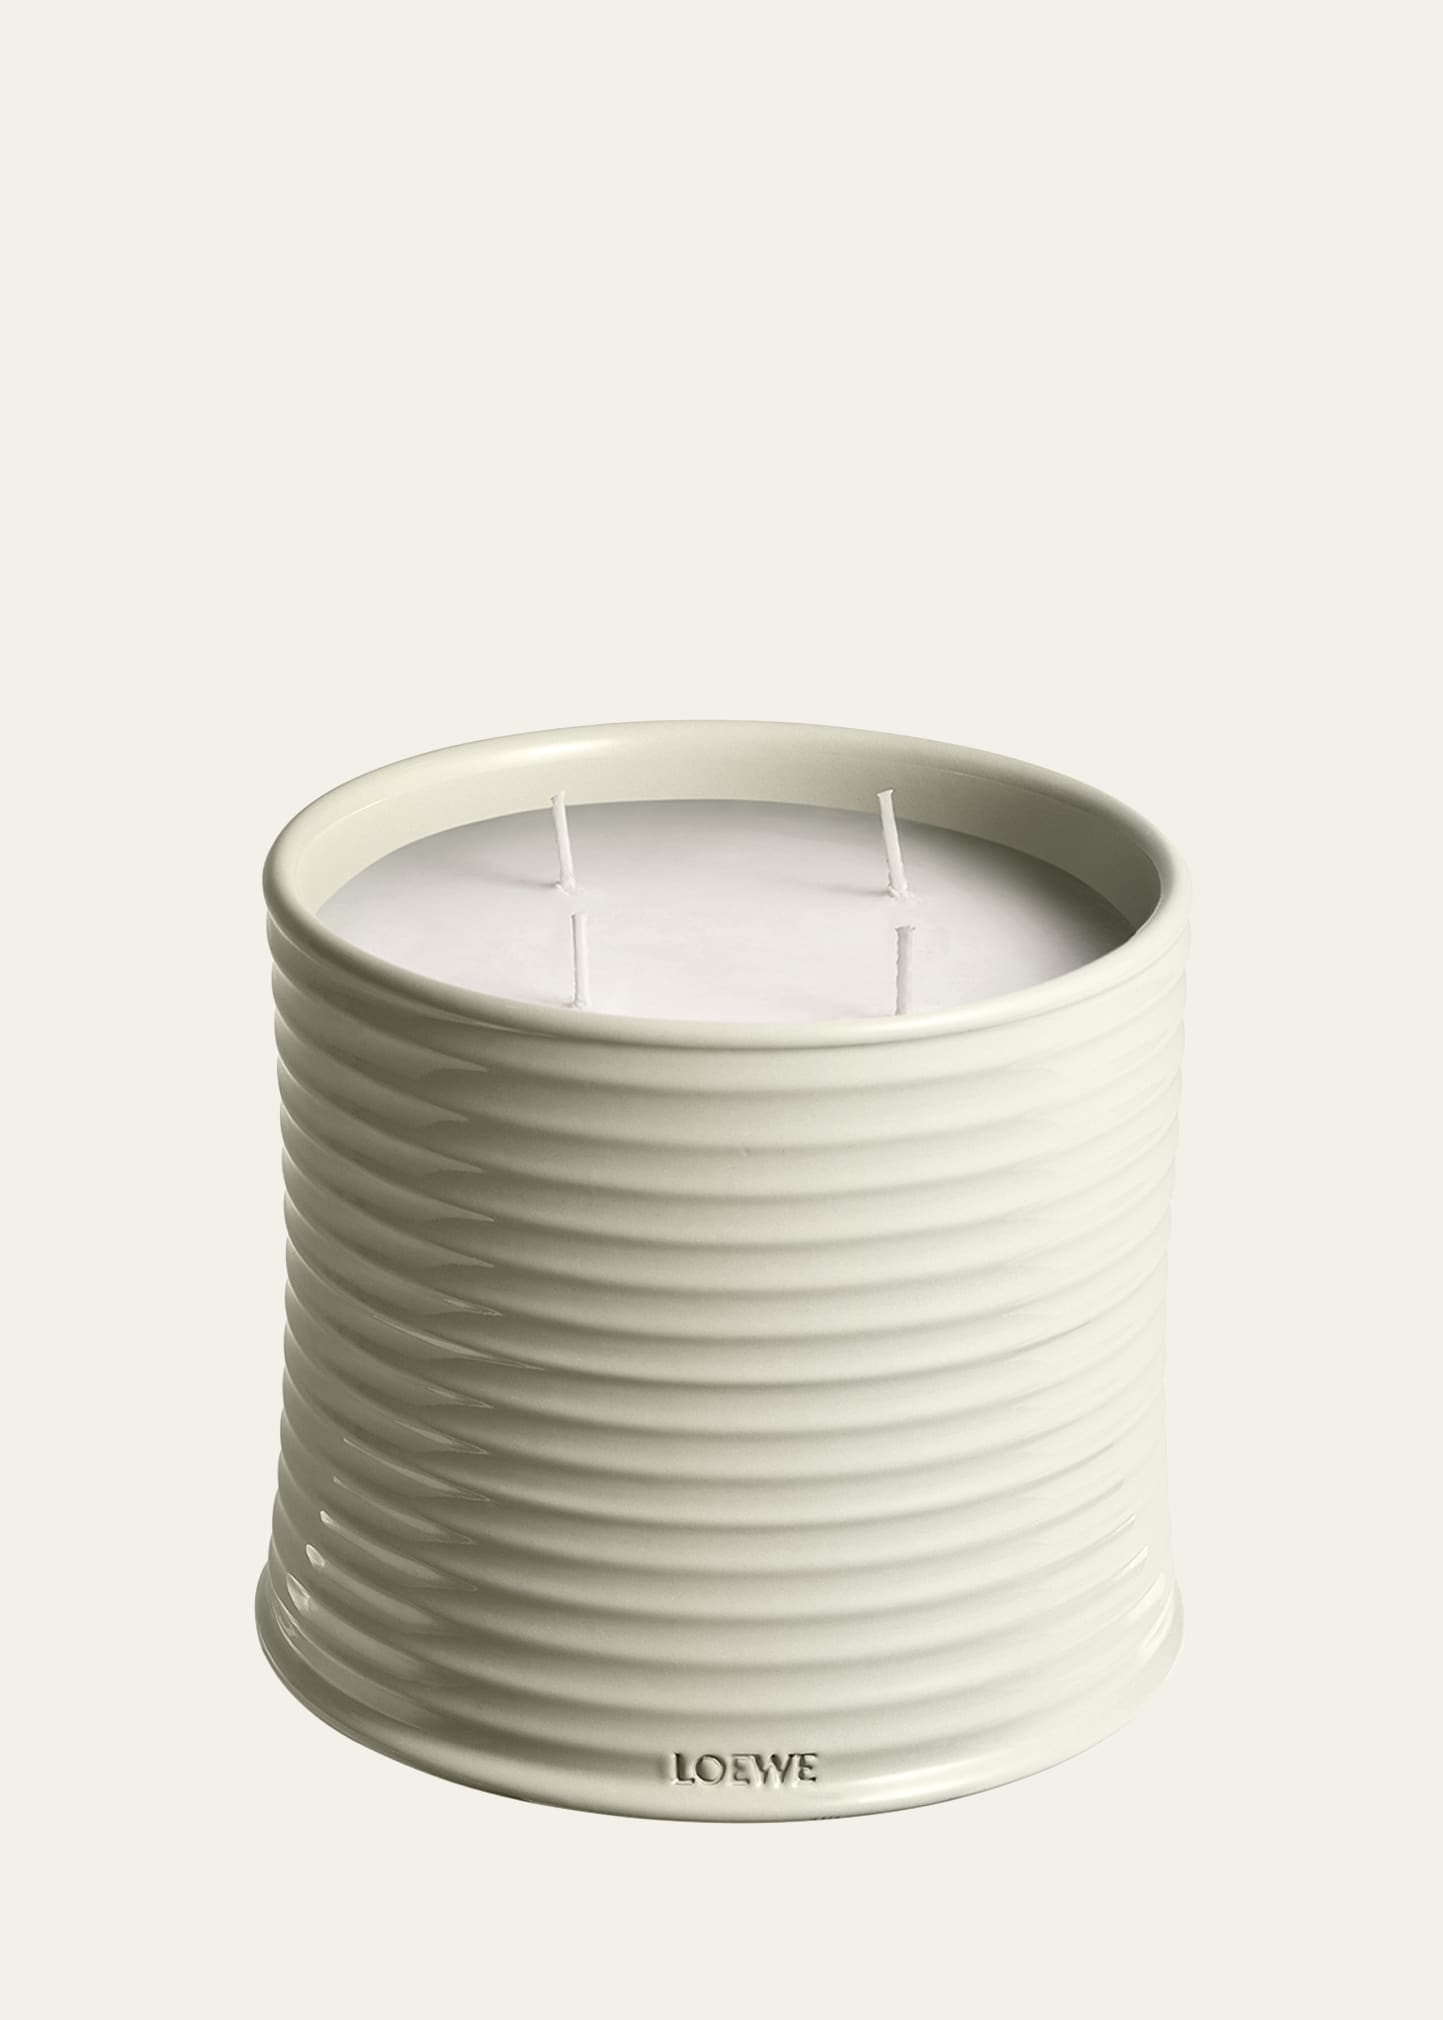 Loewe Mushroom Candle, 2120 G In White